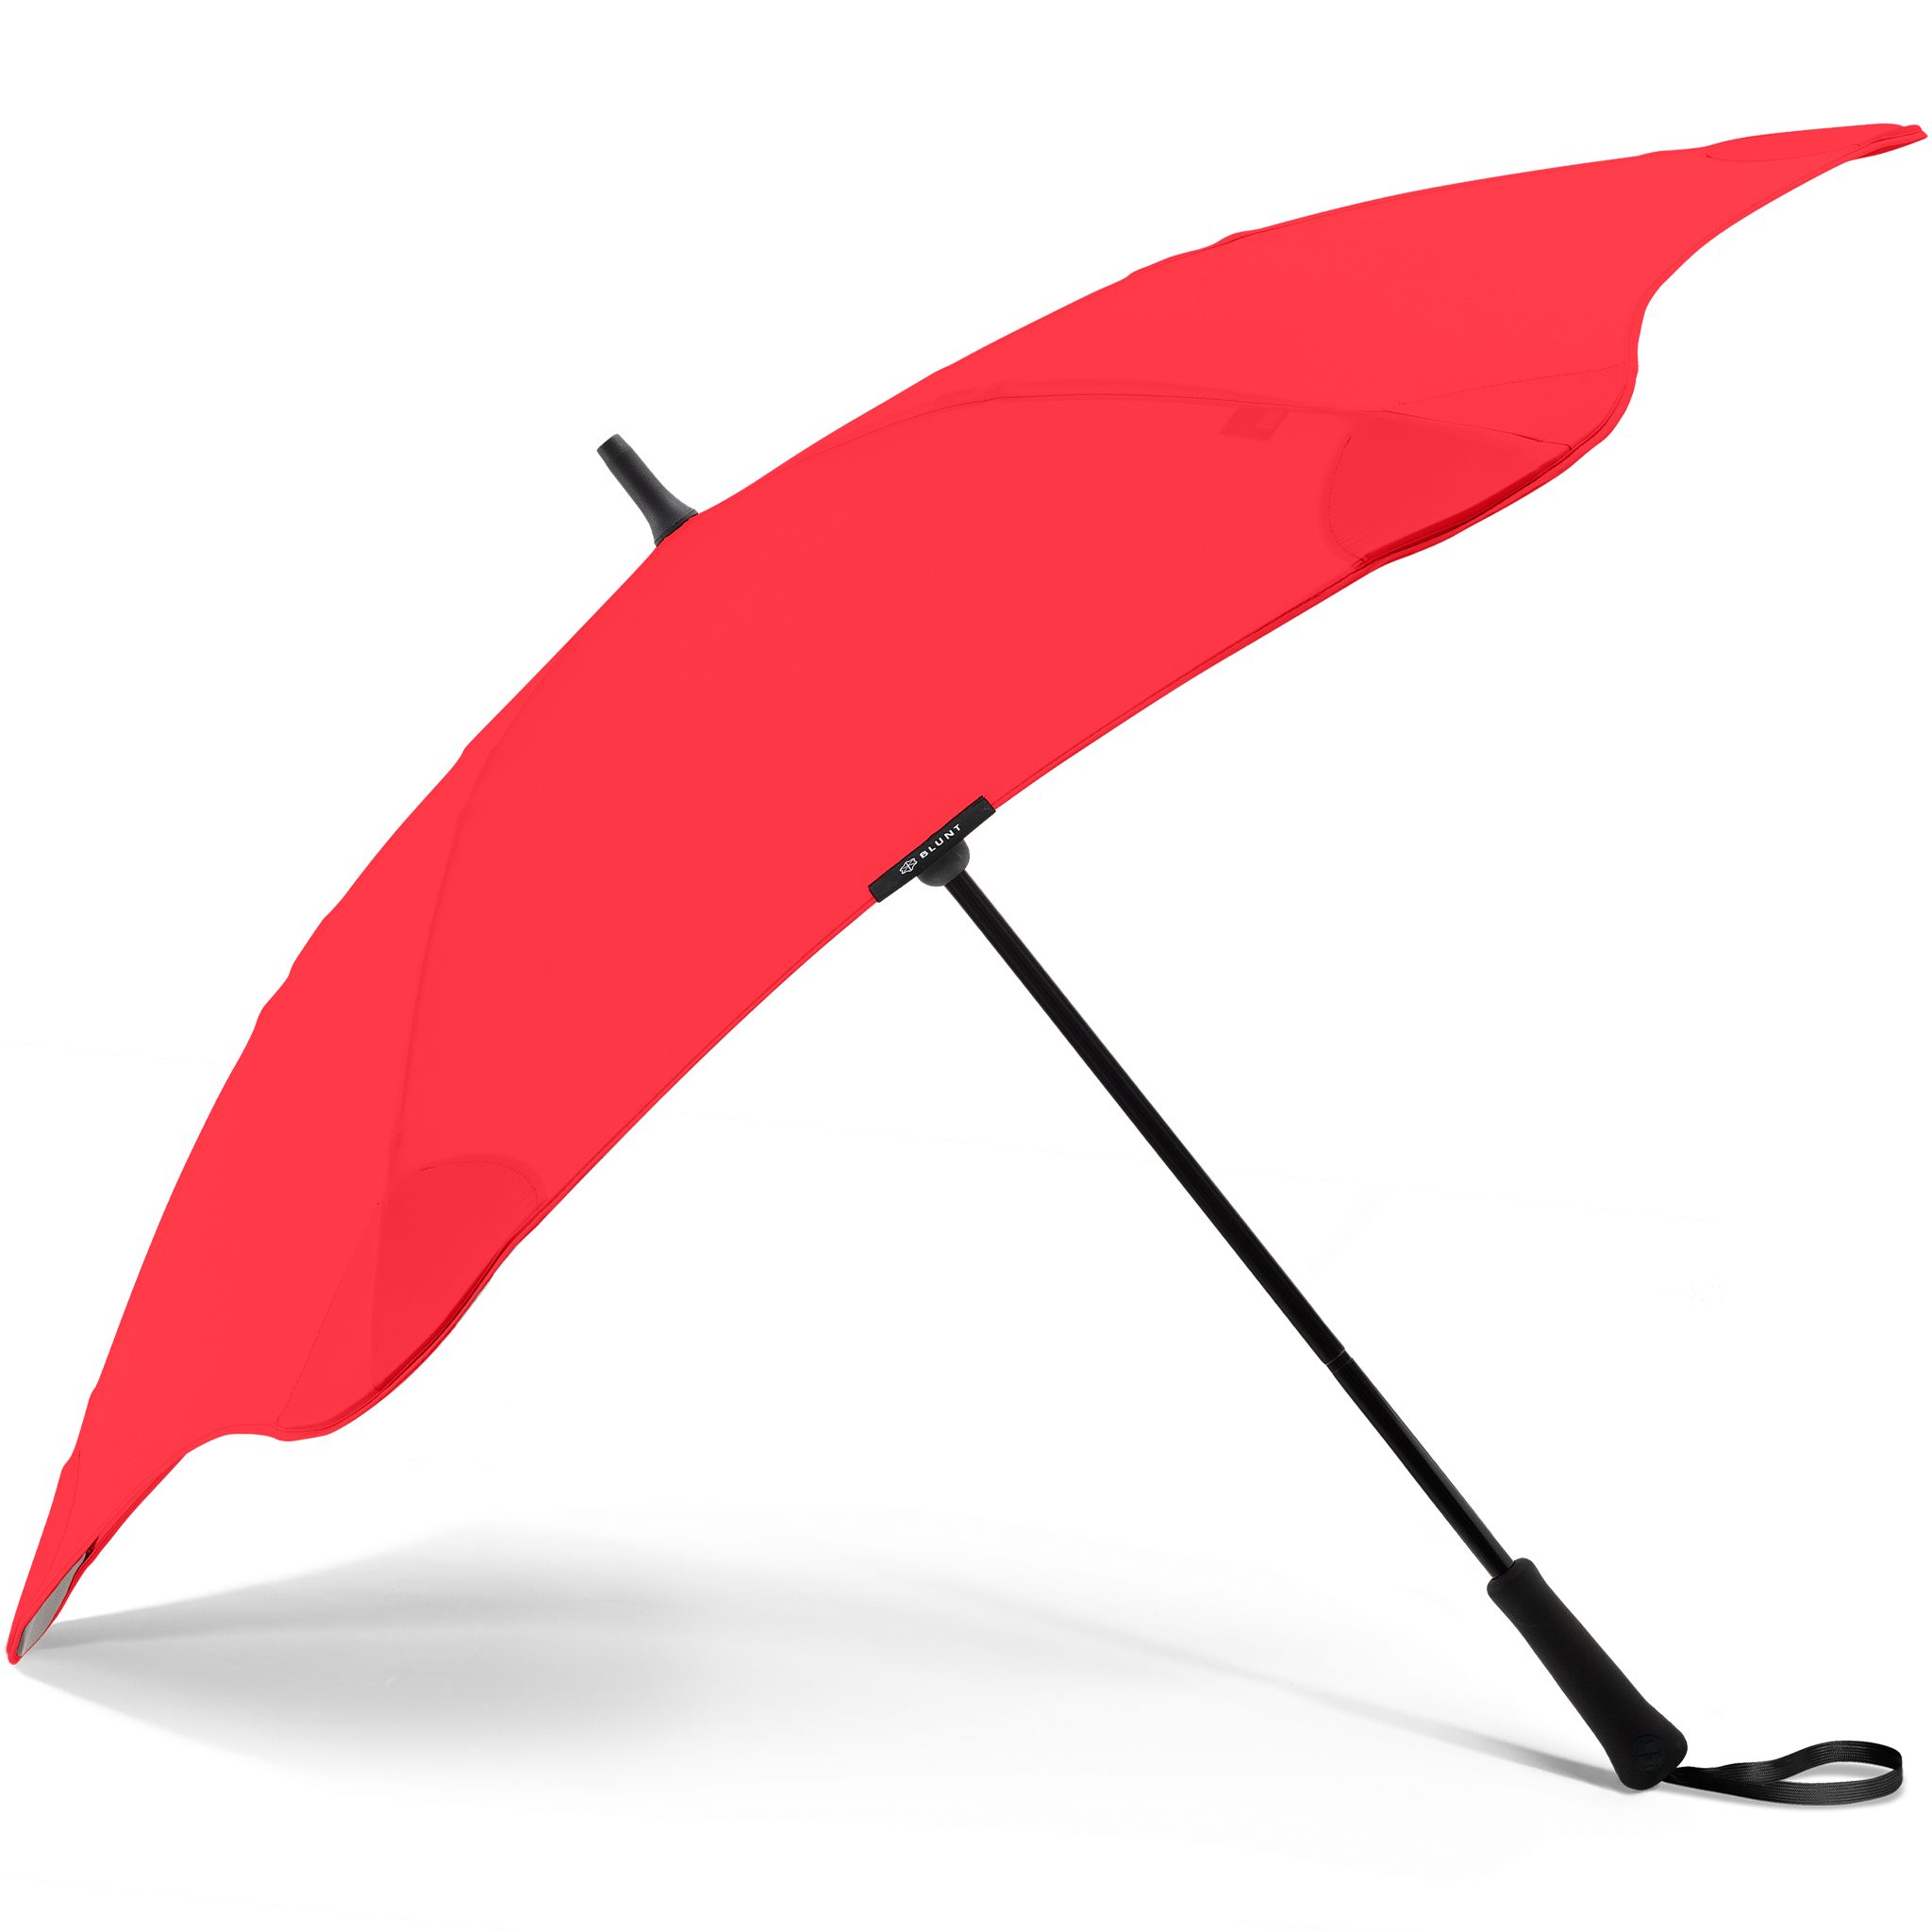 Blunt Stockregenschirm Silhouette Technologie, Classic, patentierte herausragende einzigartige rot